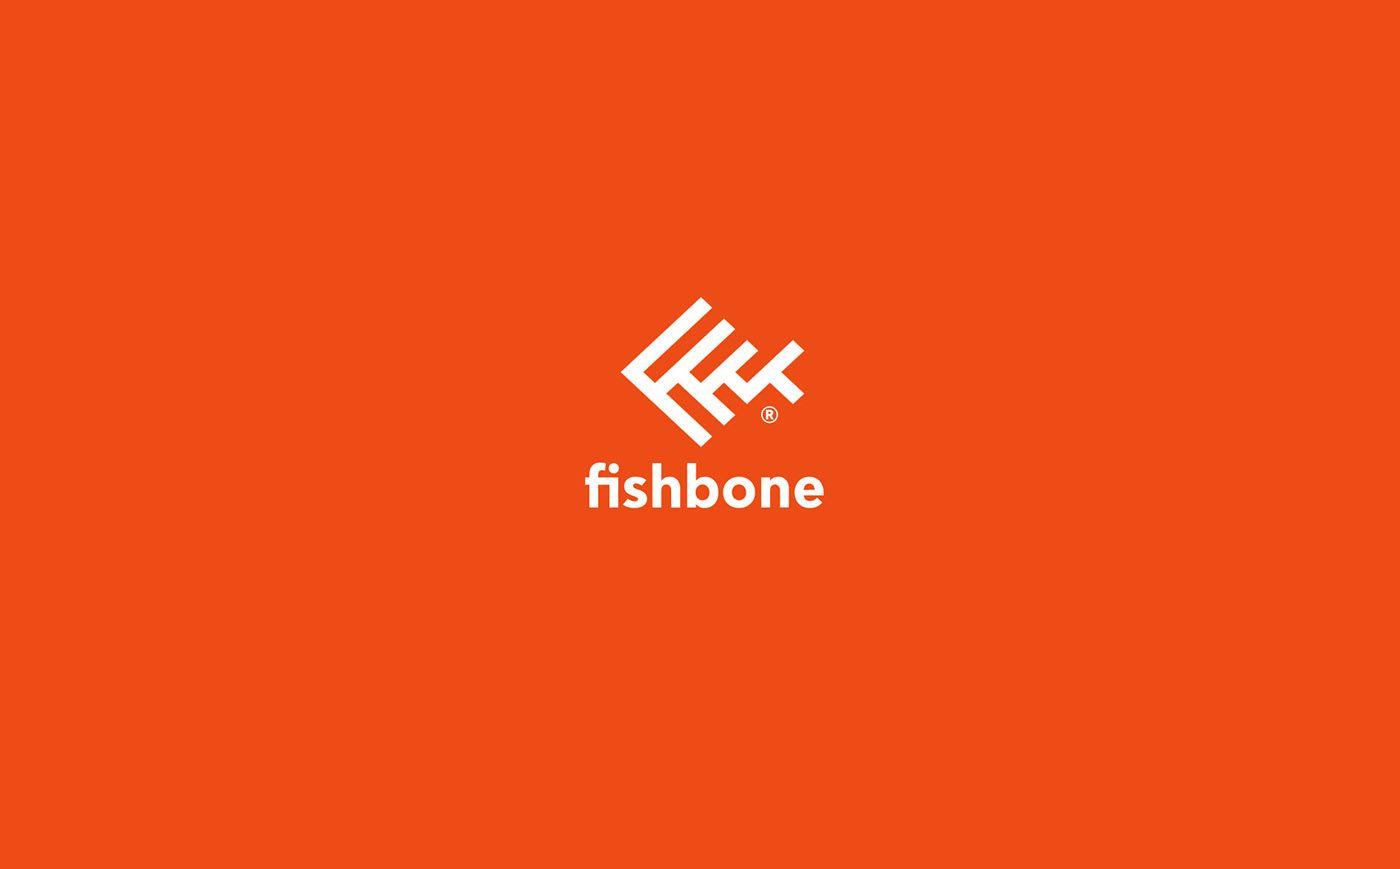 Fishbone Logo - Fishbone Logo & Identity Design